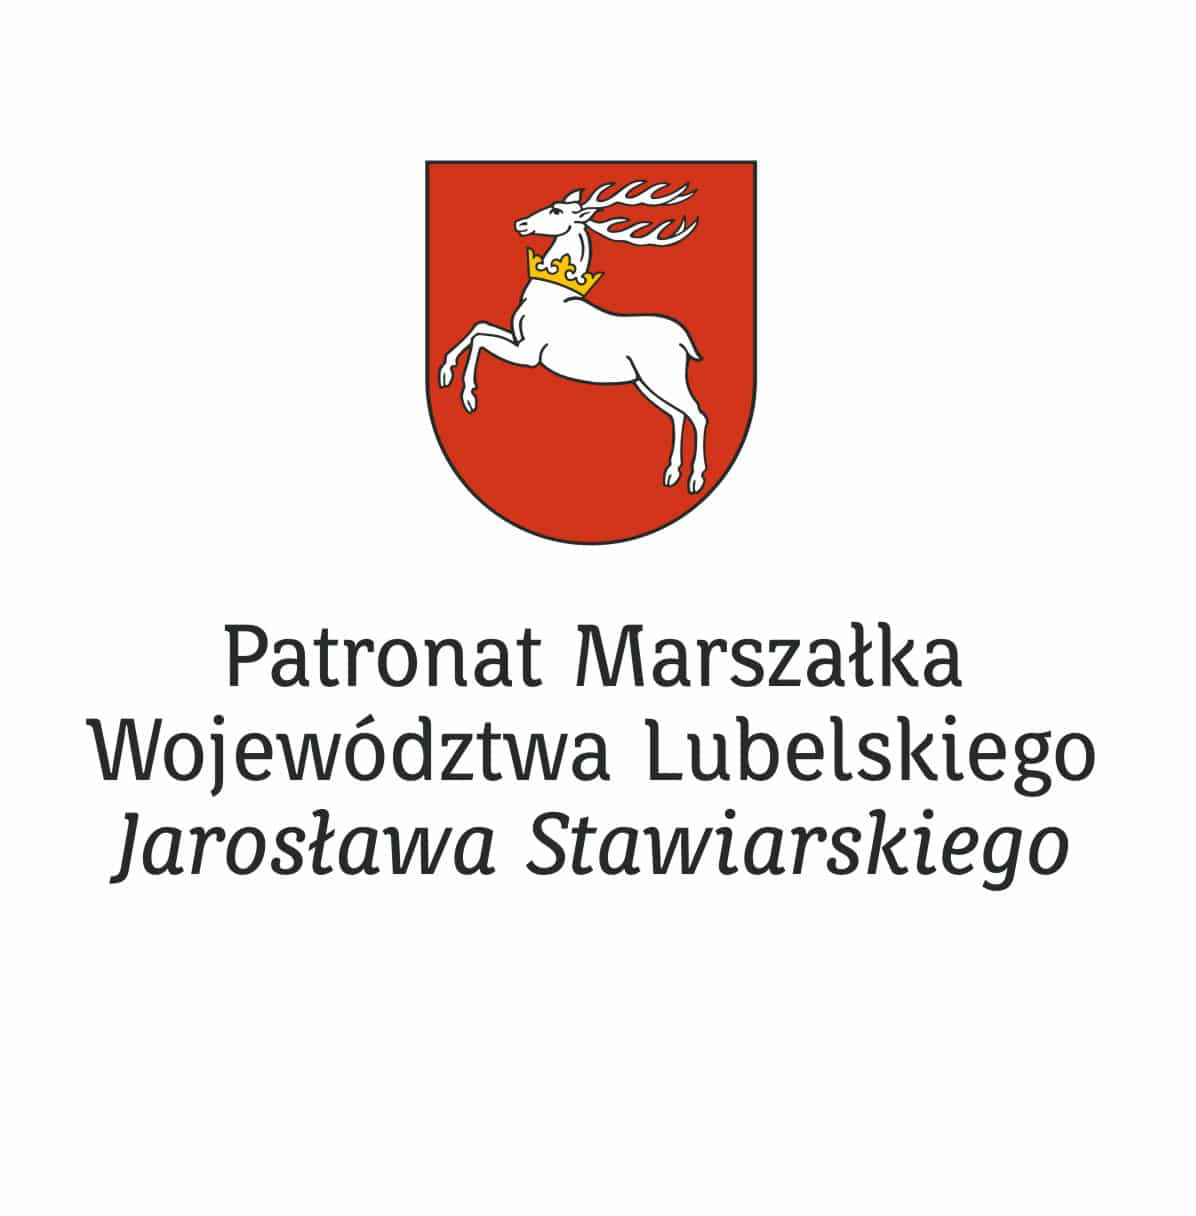 Patronat Marszałka Stawiarskiego